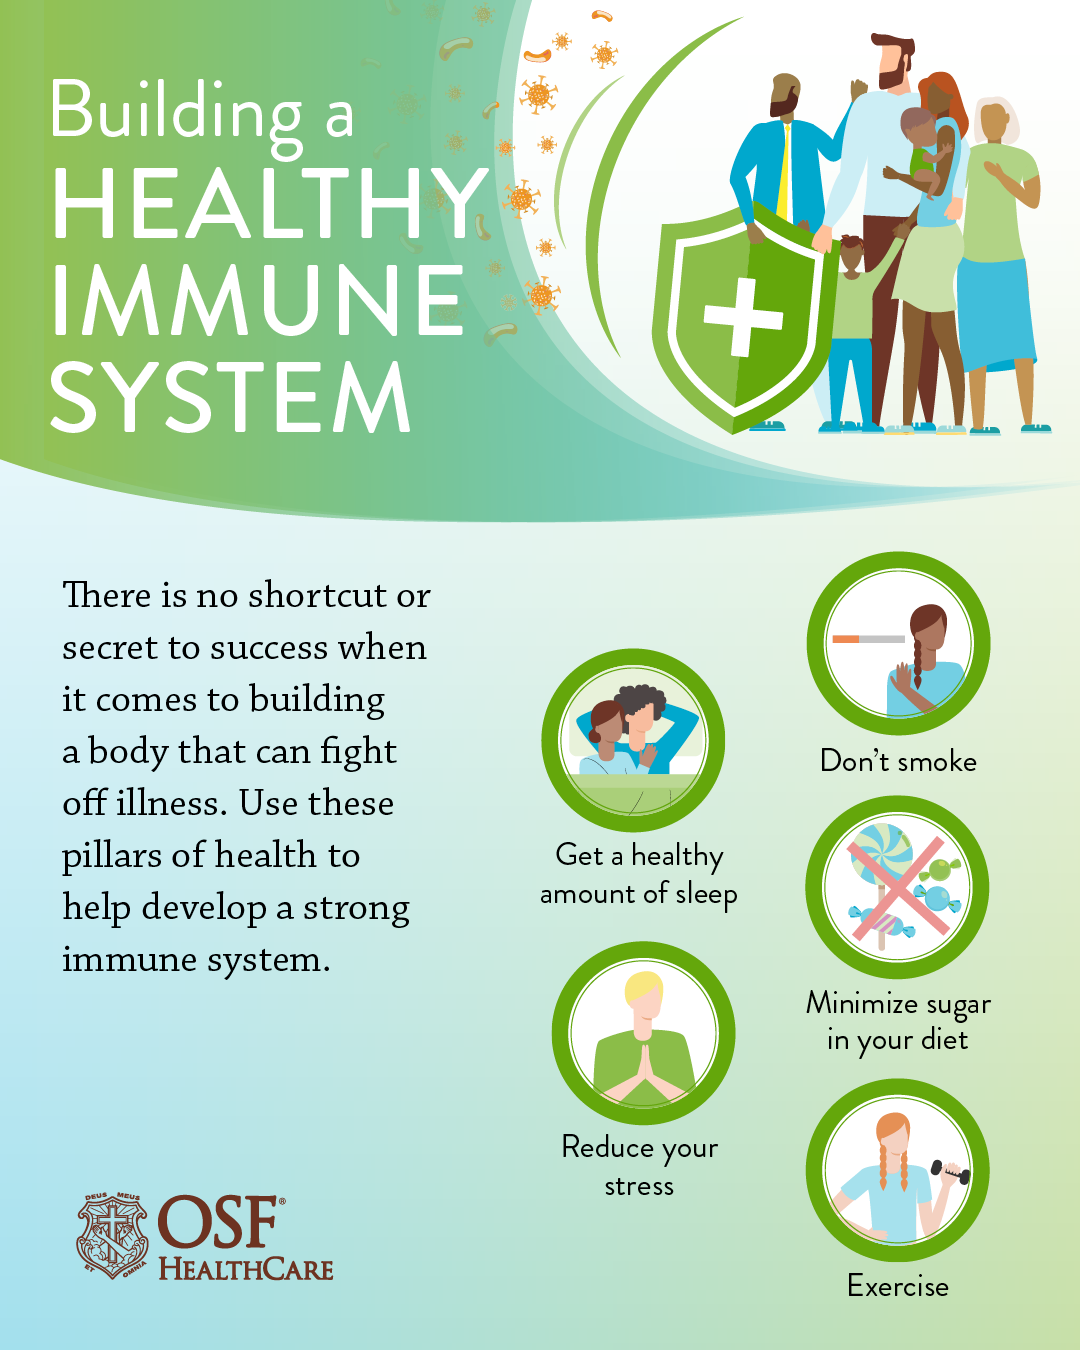 Strengthening immune response